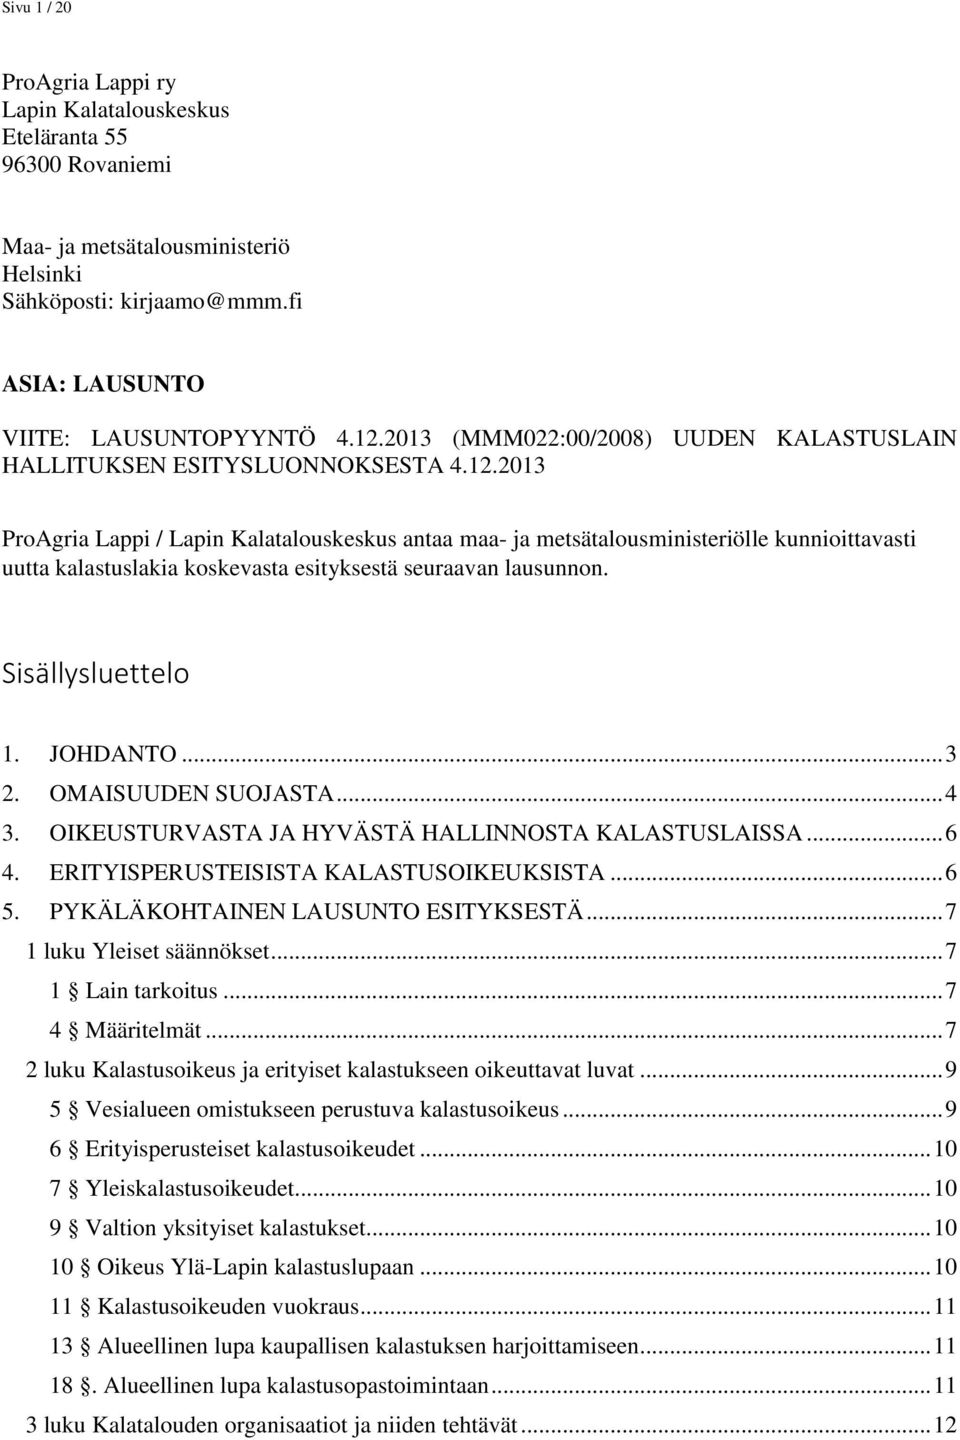 2013 ProAgria Lappi / Lapin Kalatalouskeskus antaa maa- ja metsätalousministeriölle kunnioittavasti uutta kalastuslakia koskevasta esityksestä seuraavan lausunnon. Sisällysluettelo 1. JOHDANTO... 3 2.